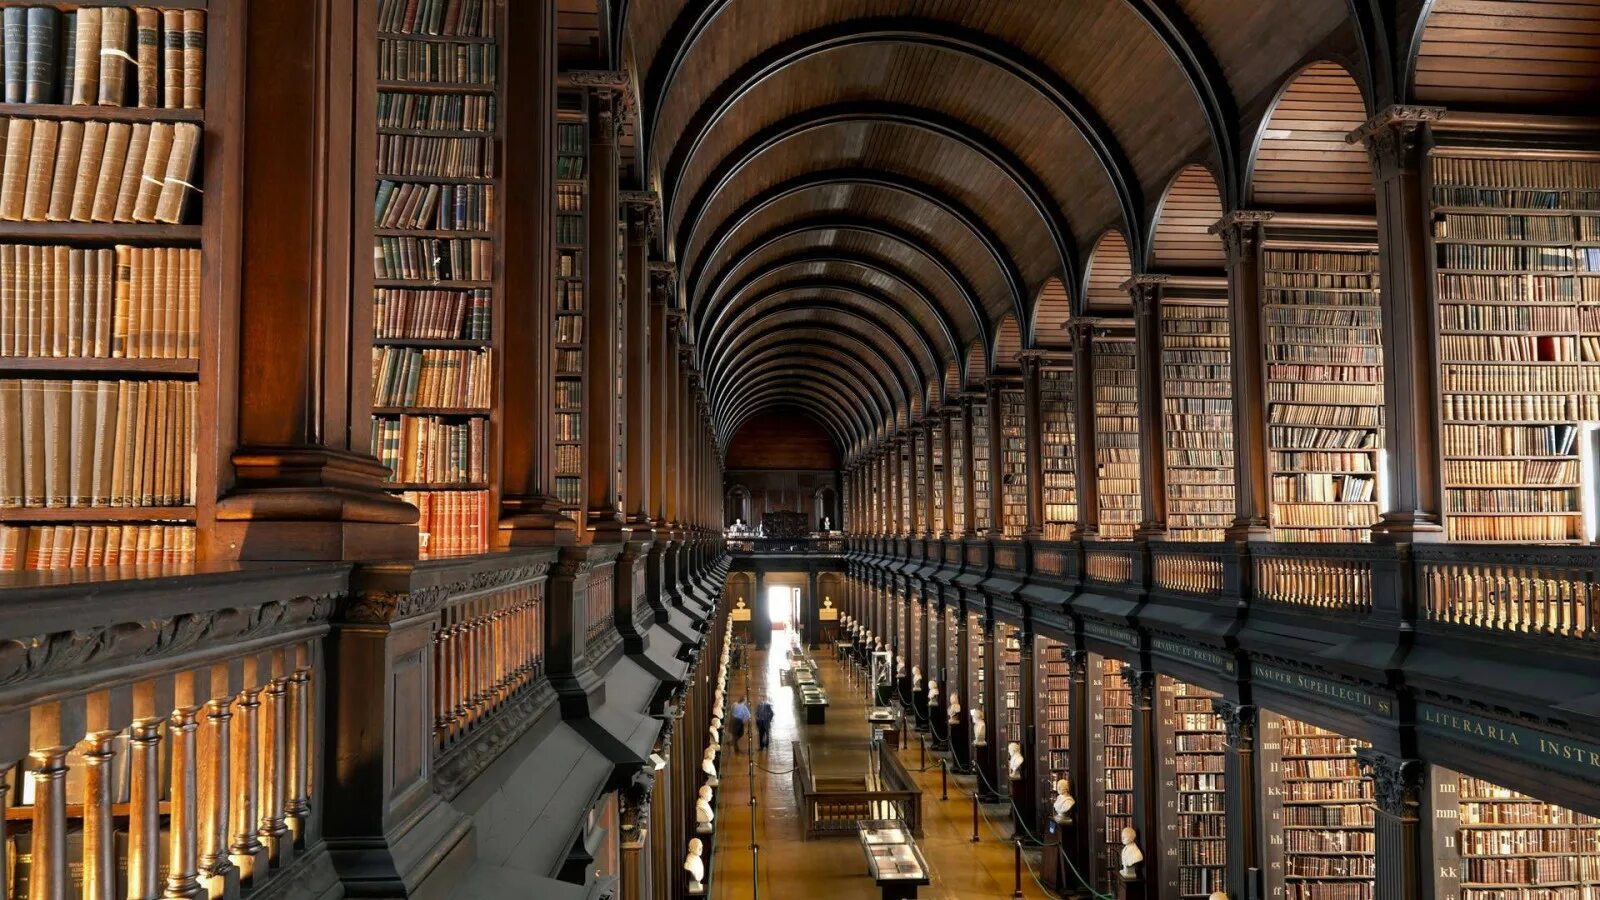 Библиотека Тринити-колледжа в Дублине. Библиотека Тринити-колледжа, Дублин, Ирландия. Тринити-колледж в Дублине, Ирландия. Библиотека Тринити-колледжа в Кембридже. Great library